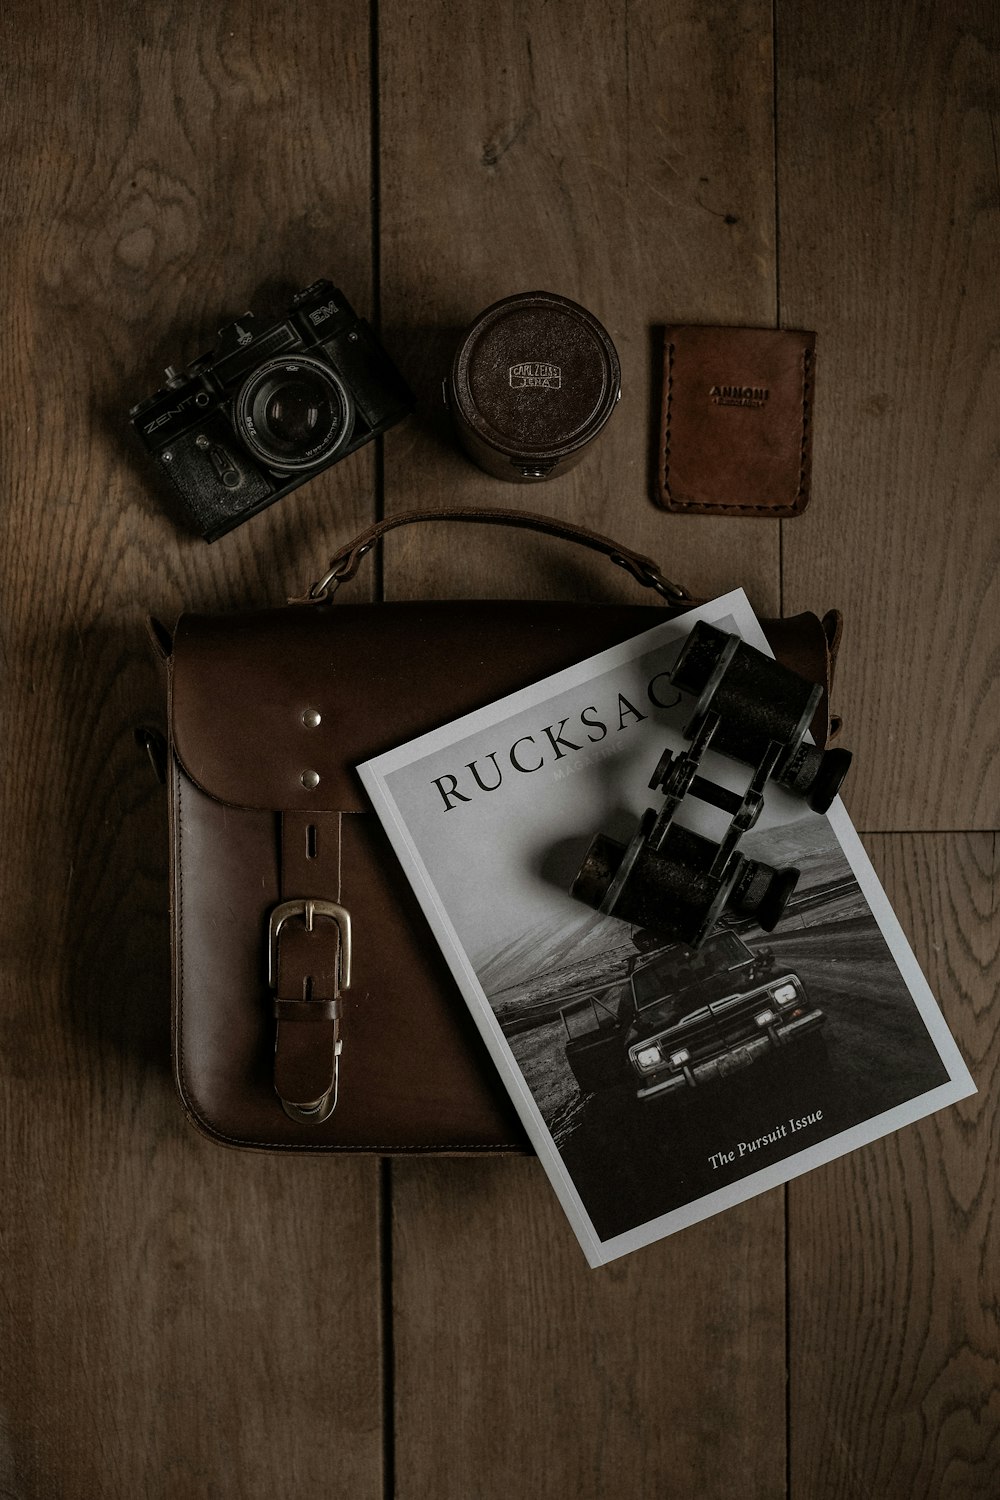 eine Kamera und ein Buch auf einem Holzboden